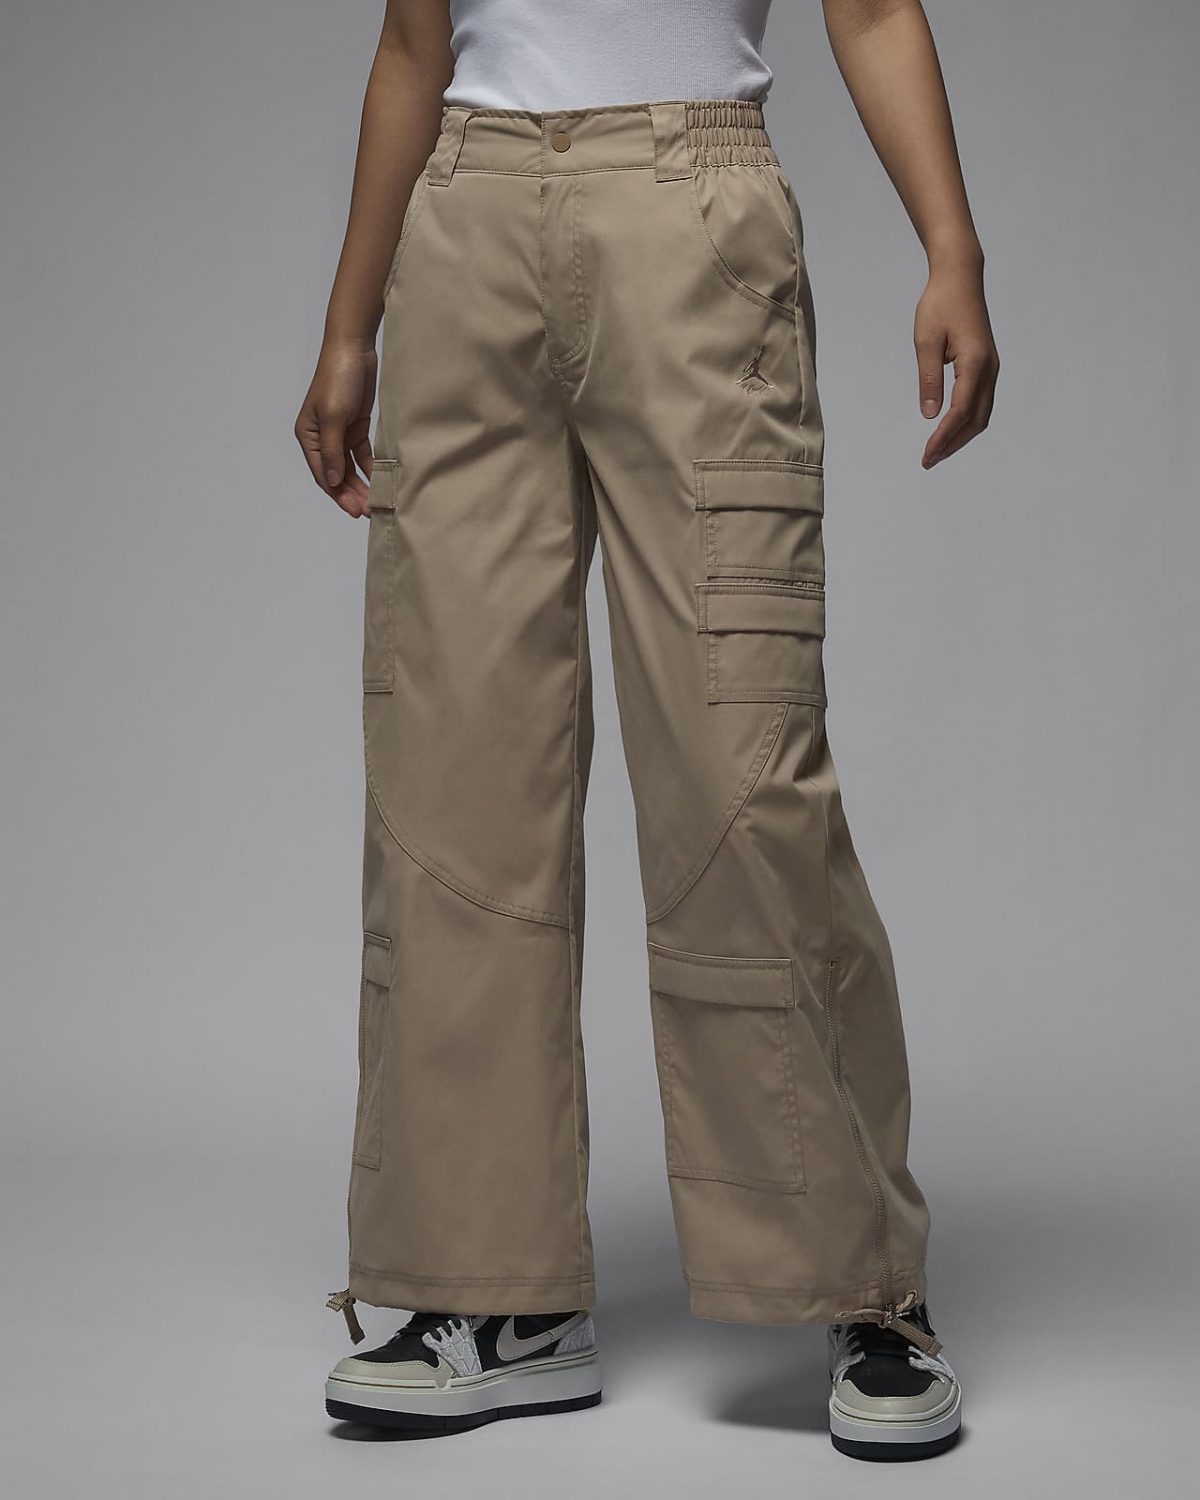 Женские брюки nike Jordan Chicago коричневые фото